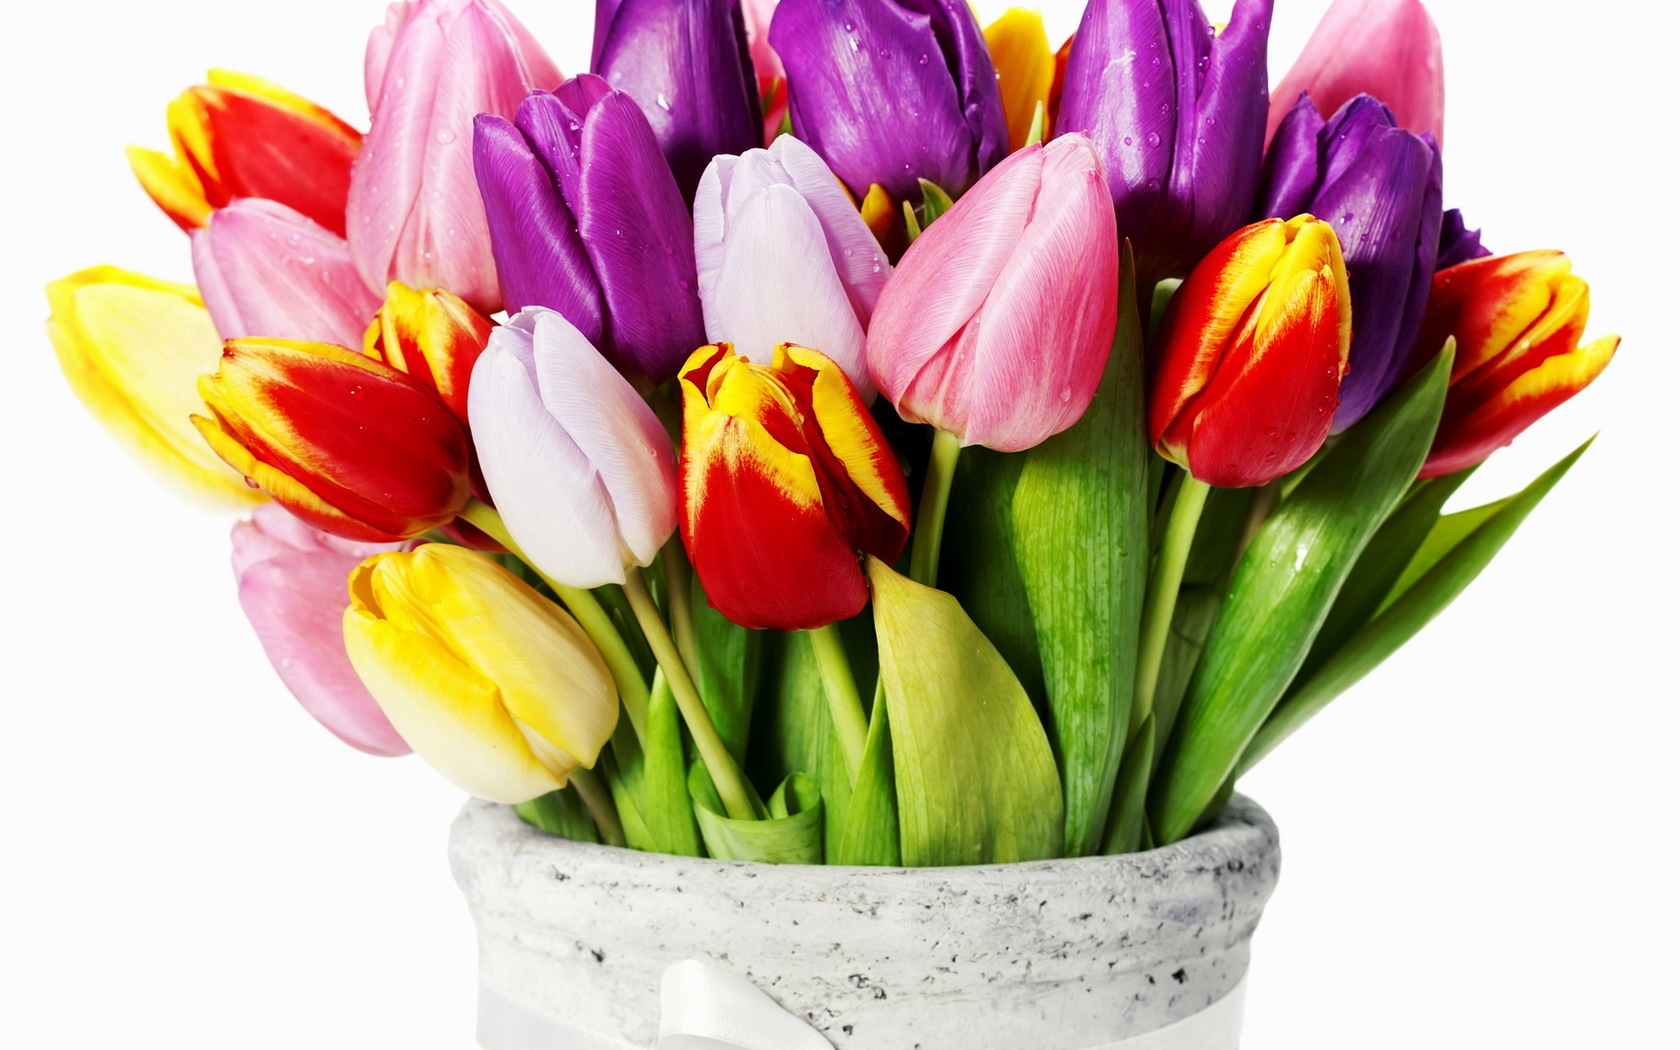 bouquets, plants, flowers, tulips images